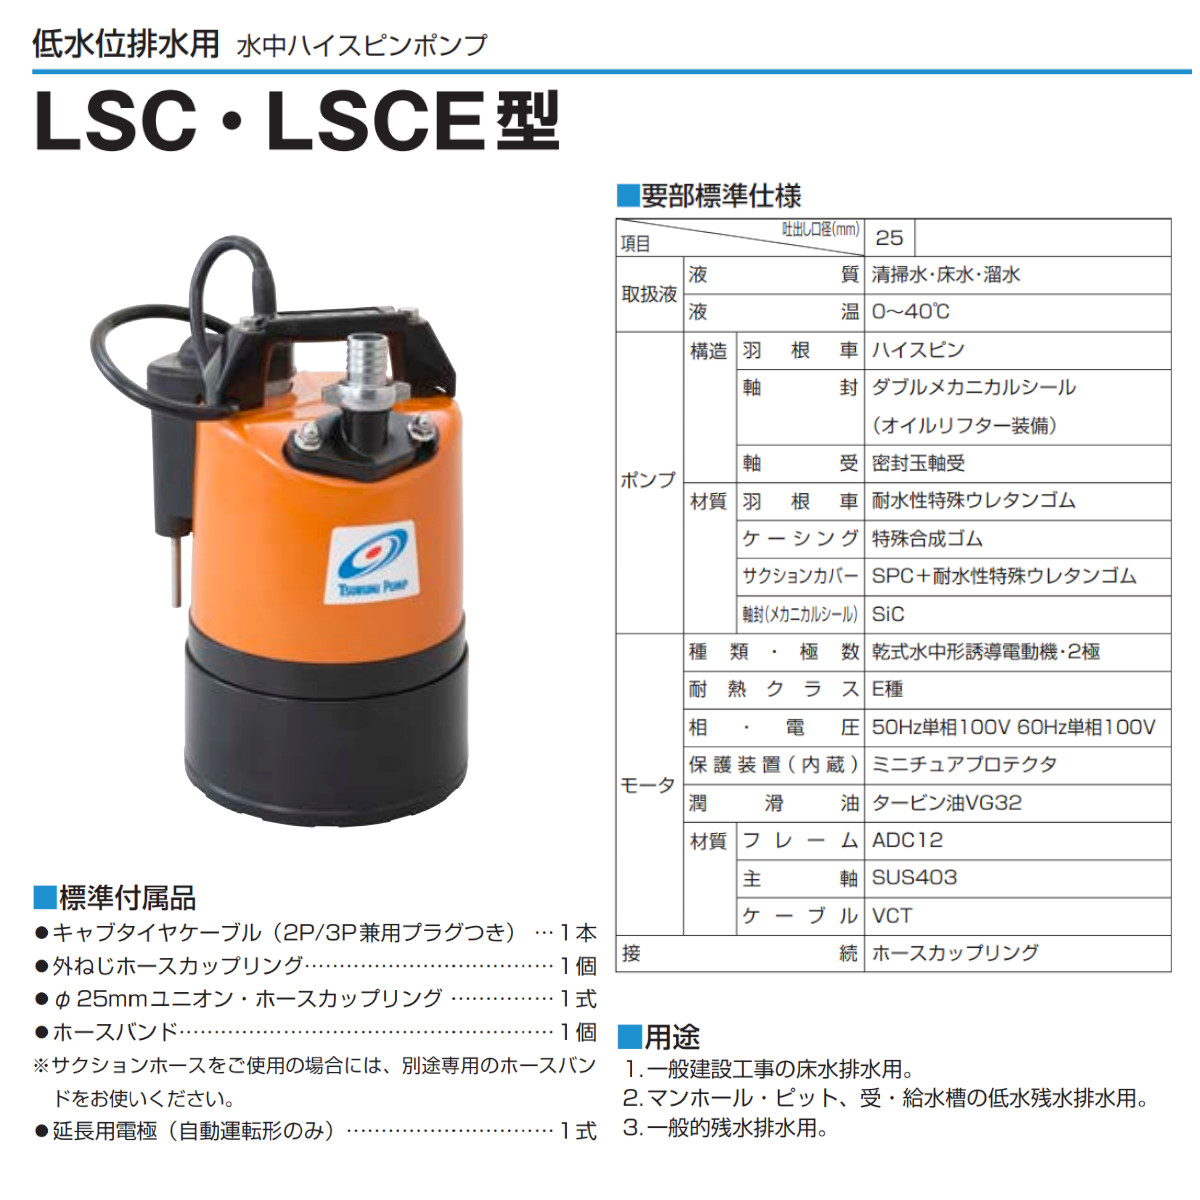 ツルミ 低水位排水用 水中ポンプ LSCE1.4S 自動型 単相100V 50Hz/60Hz